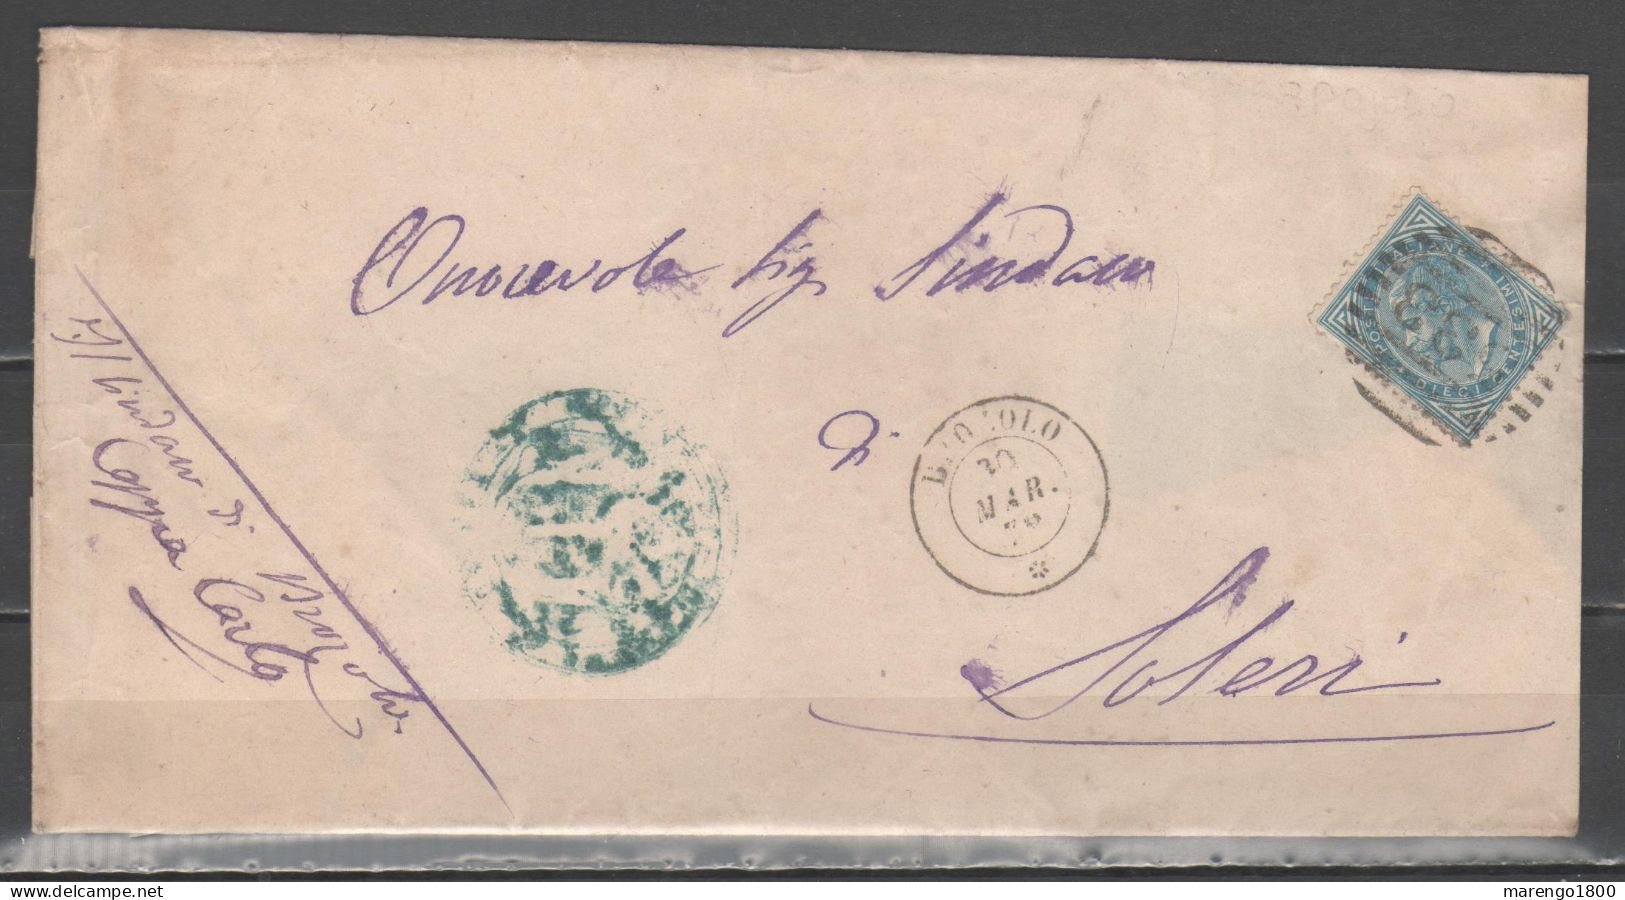 ITALIA 1878 - Effigie 10 C. (1877) Su Lettera Annullo Brozolo        (g9662) - Marcofilie